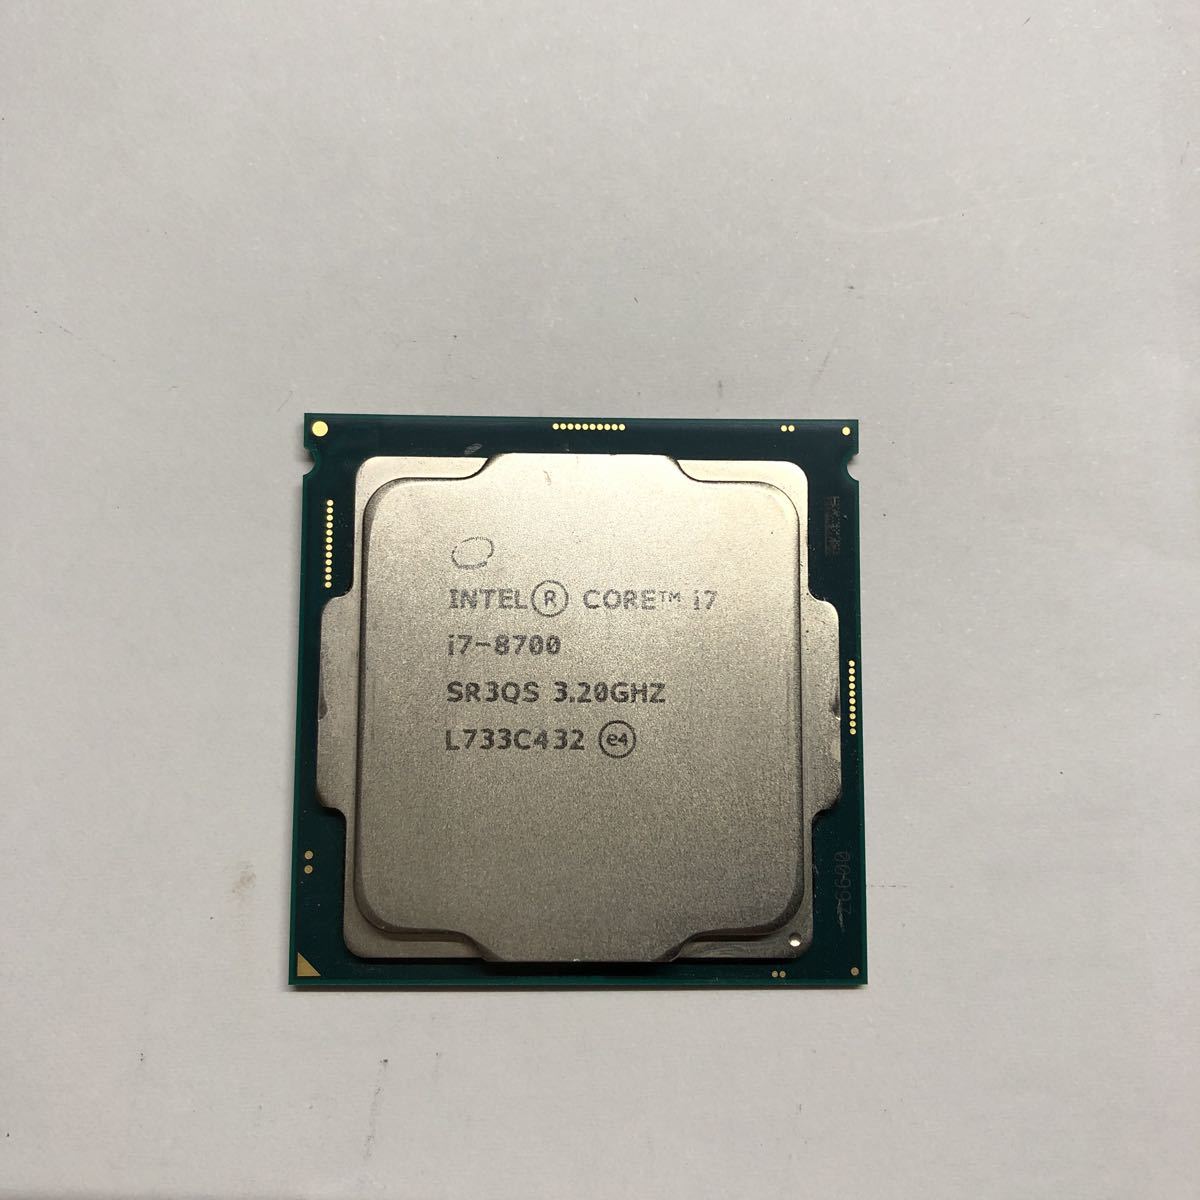 Core i7 Intel Core i7-8700 SR3QS 3.20GHZ /85